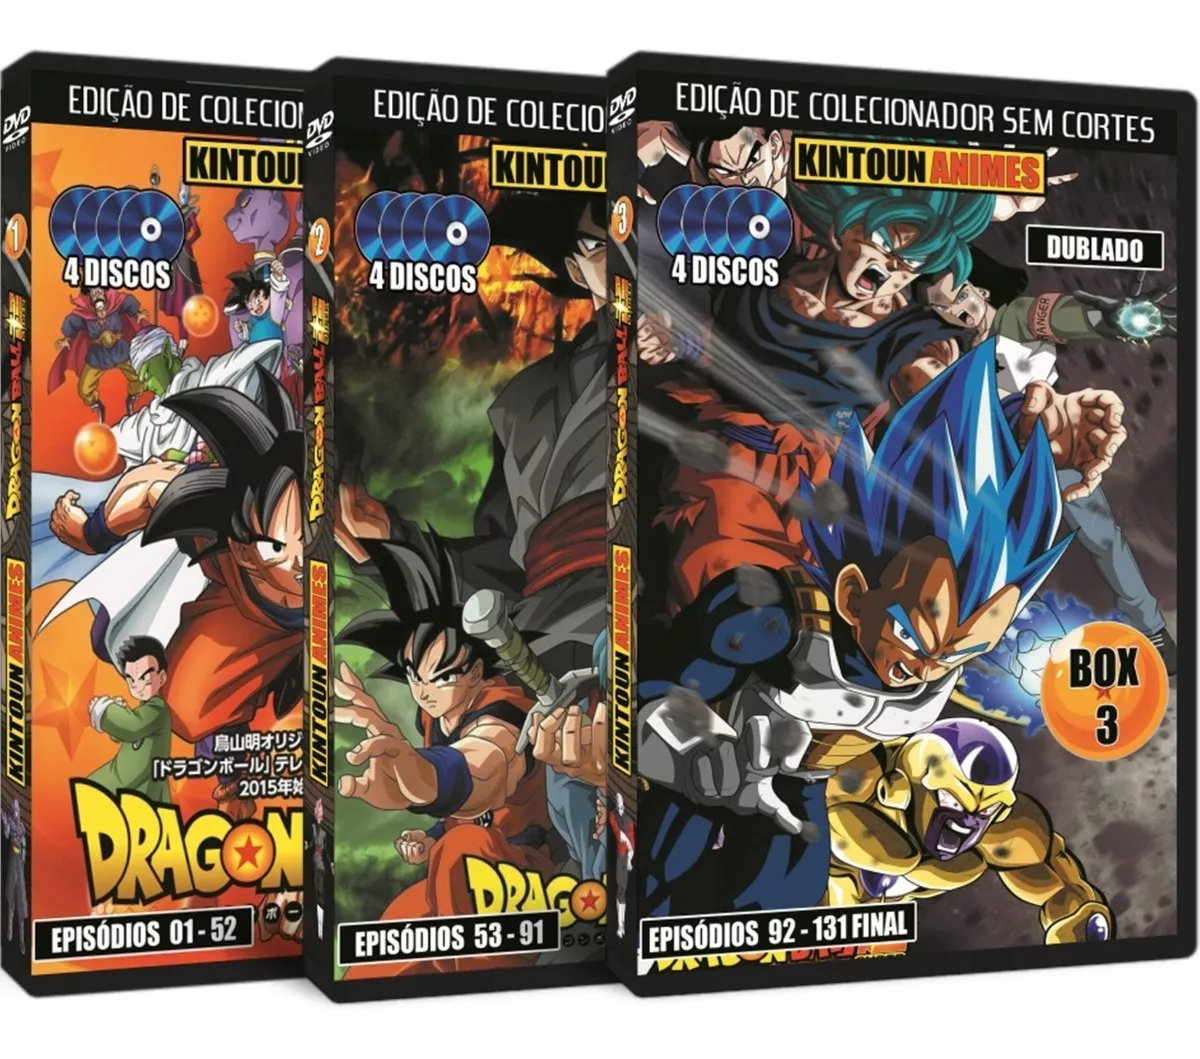 Dragon Ball Super Totalmente Dublado Em Dvd + Filme Broly